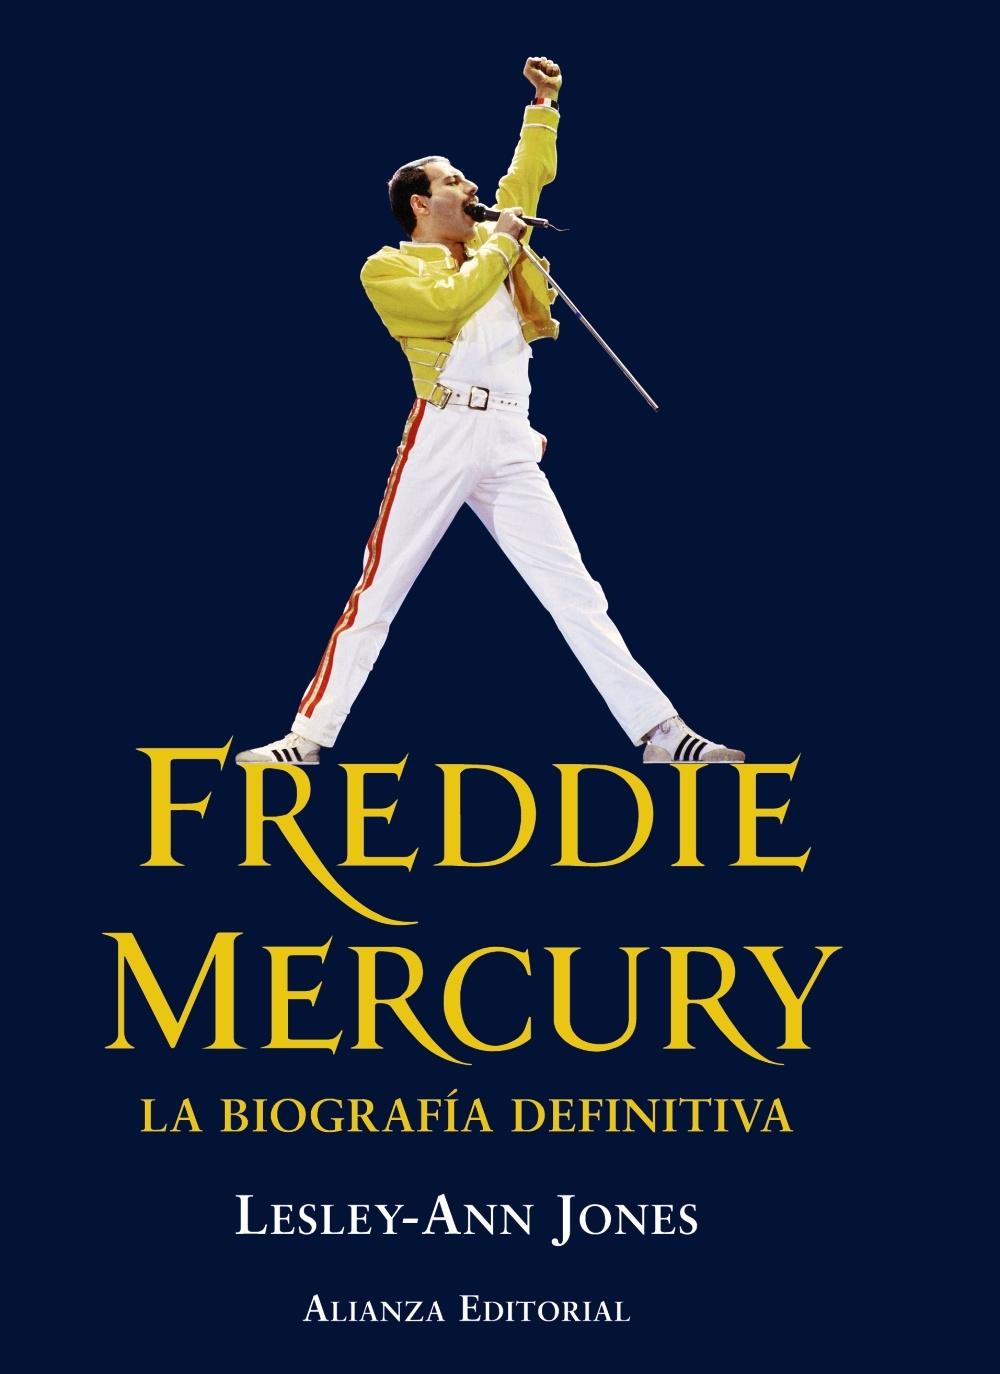 Freddie Mercury "La Biografía Definitiva"